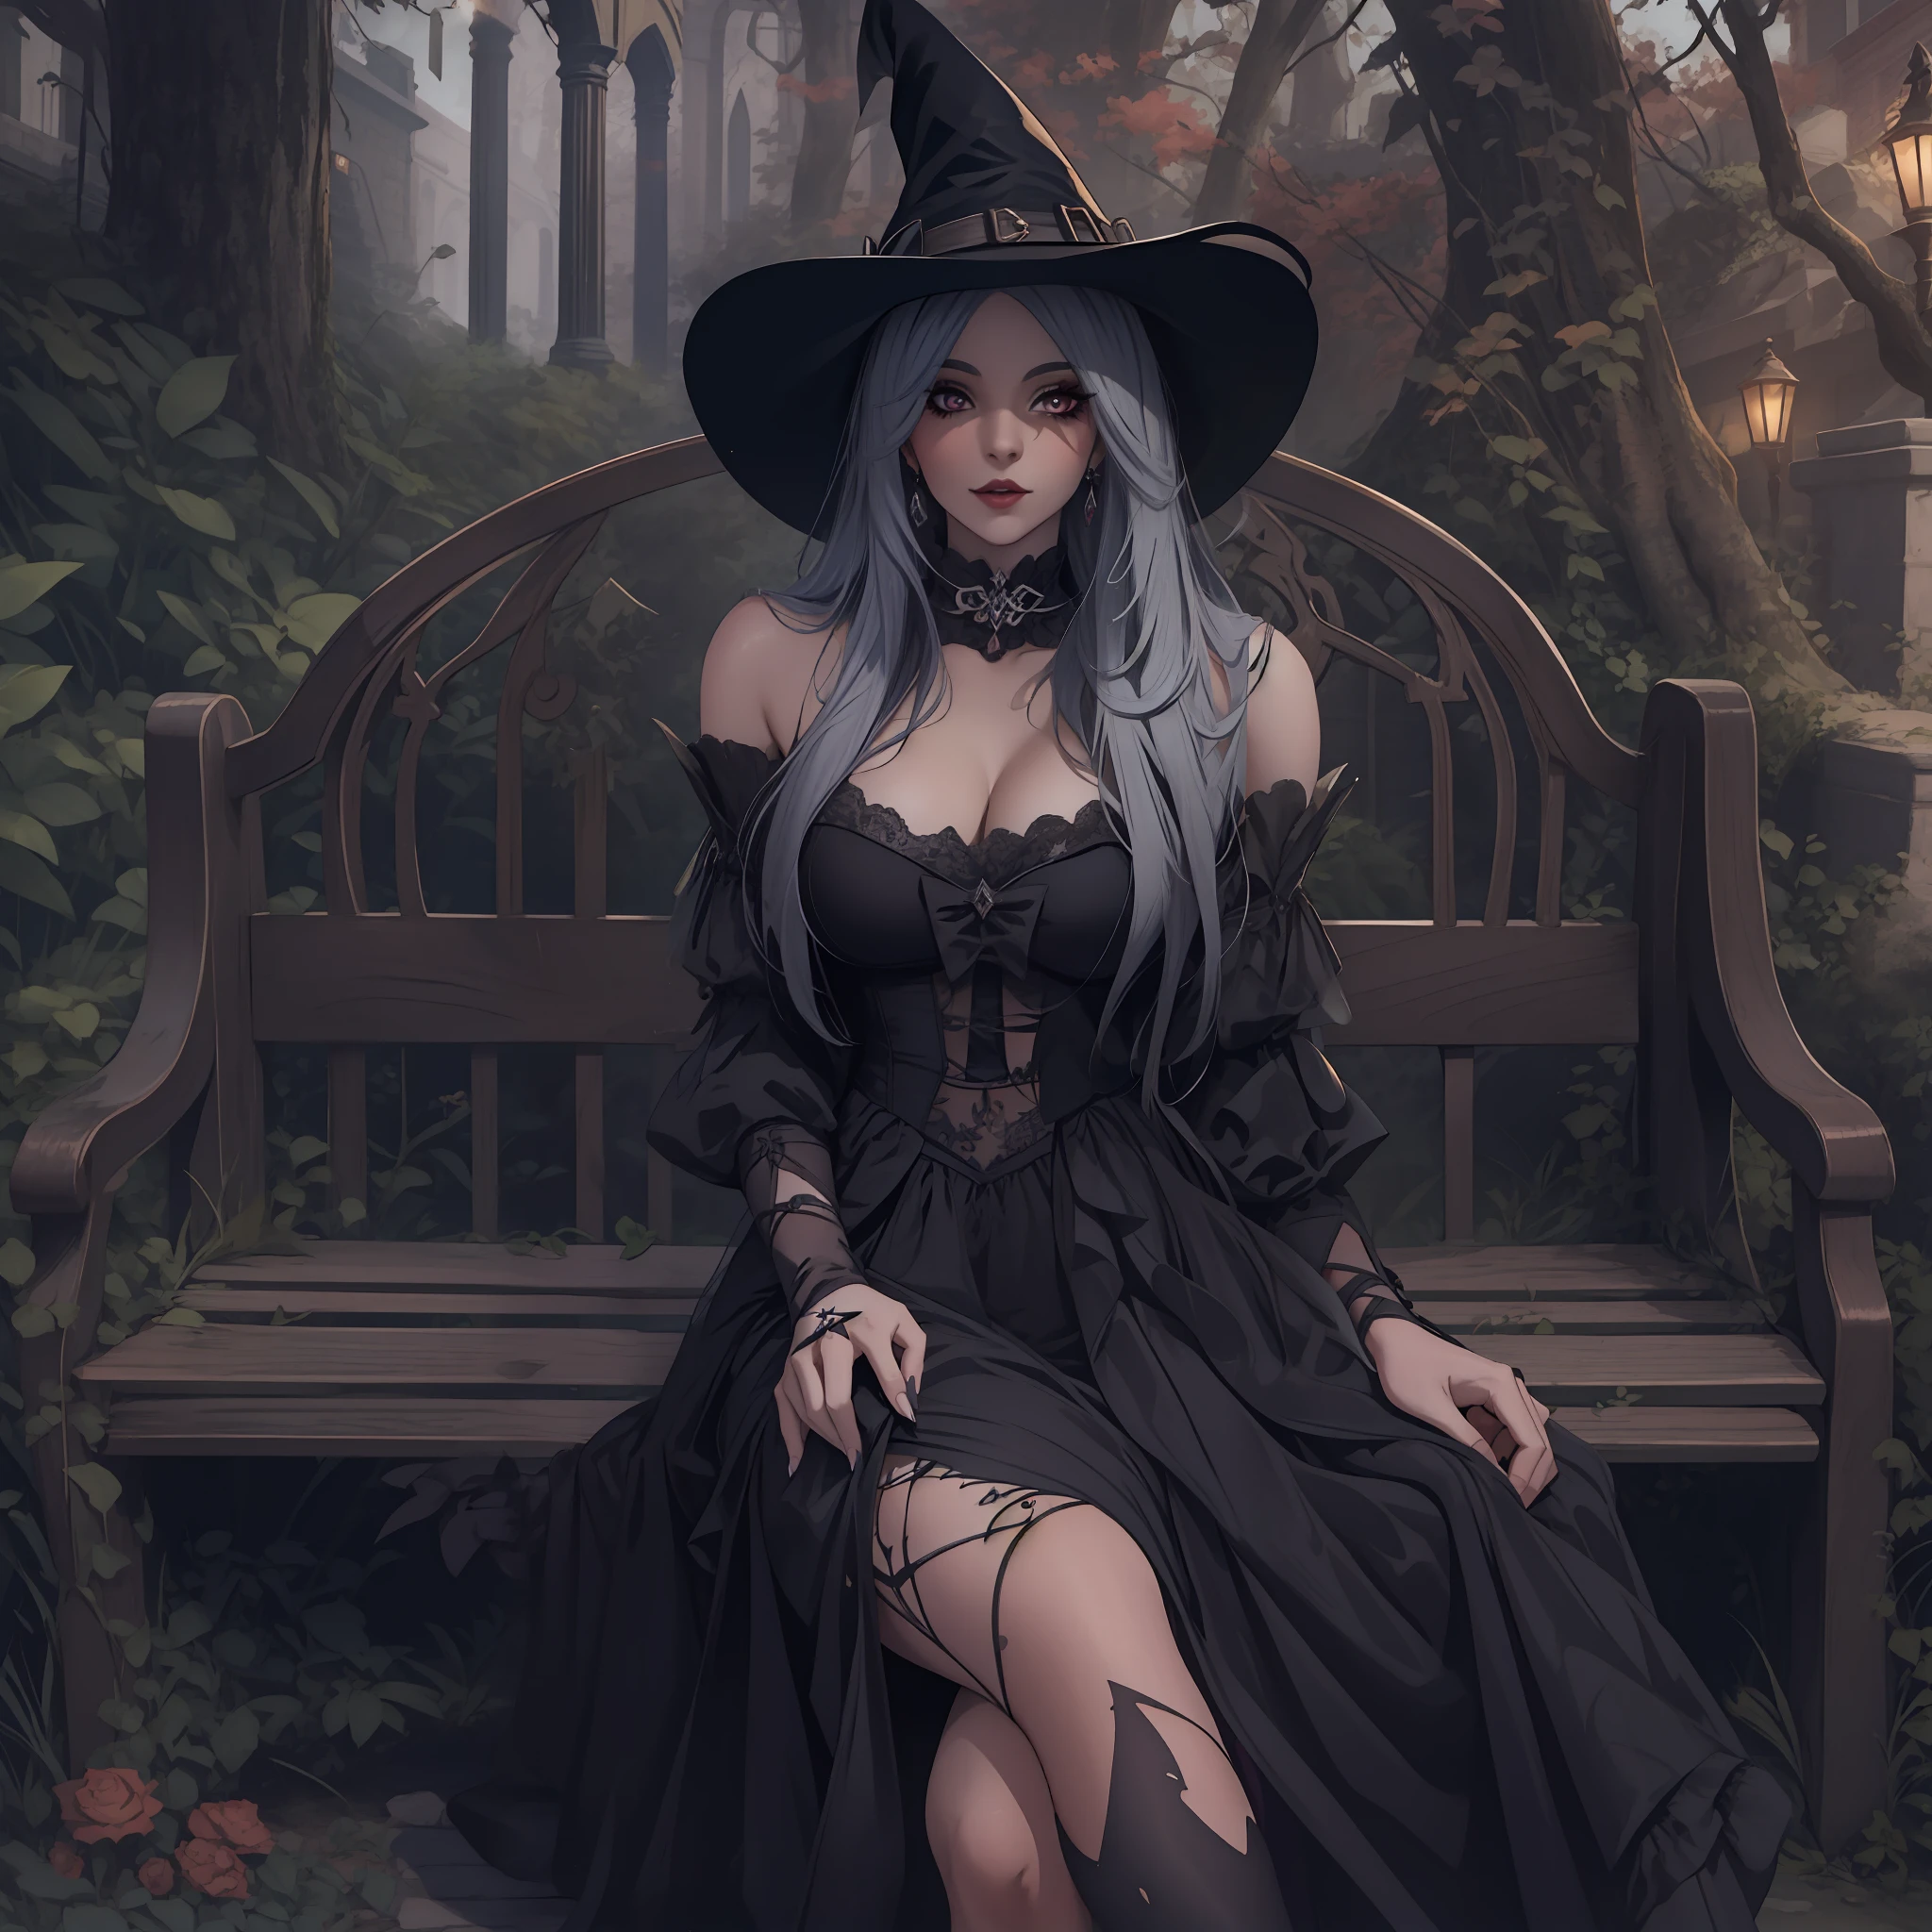 Ведьма сидит на скамейке в черном платье и шляпе, красивая волшебница, красивая волшебница, красивая волшебница, красивая женщина-ведьма, красивая женщина-ведьма, Джессика Блэк, классическая ведьма, ведьмовская, красивая ковбойская ведьма, Темная Ведьма, мода темная ведьма,  симпатичная некромантка, ведьма из Castlevania, красивая женщина-волшебница